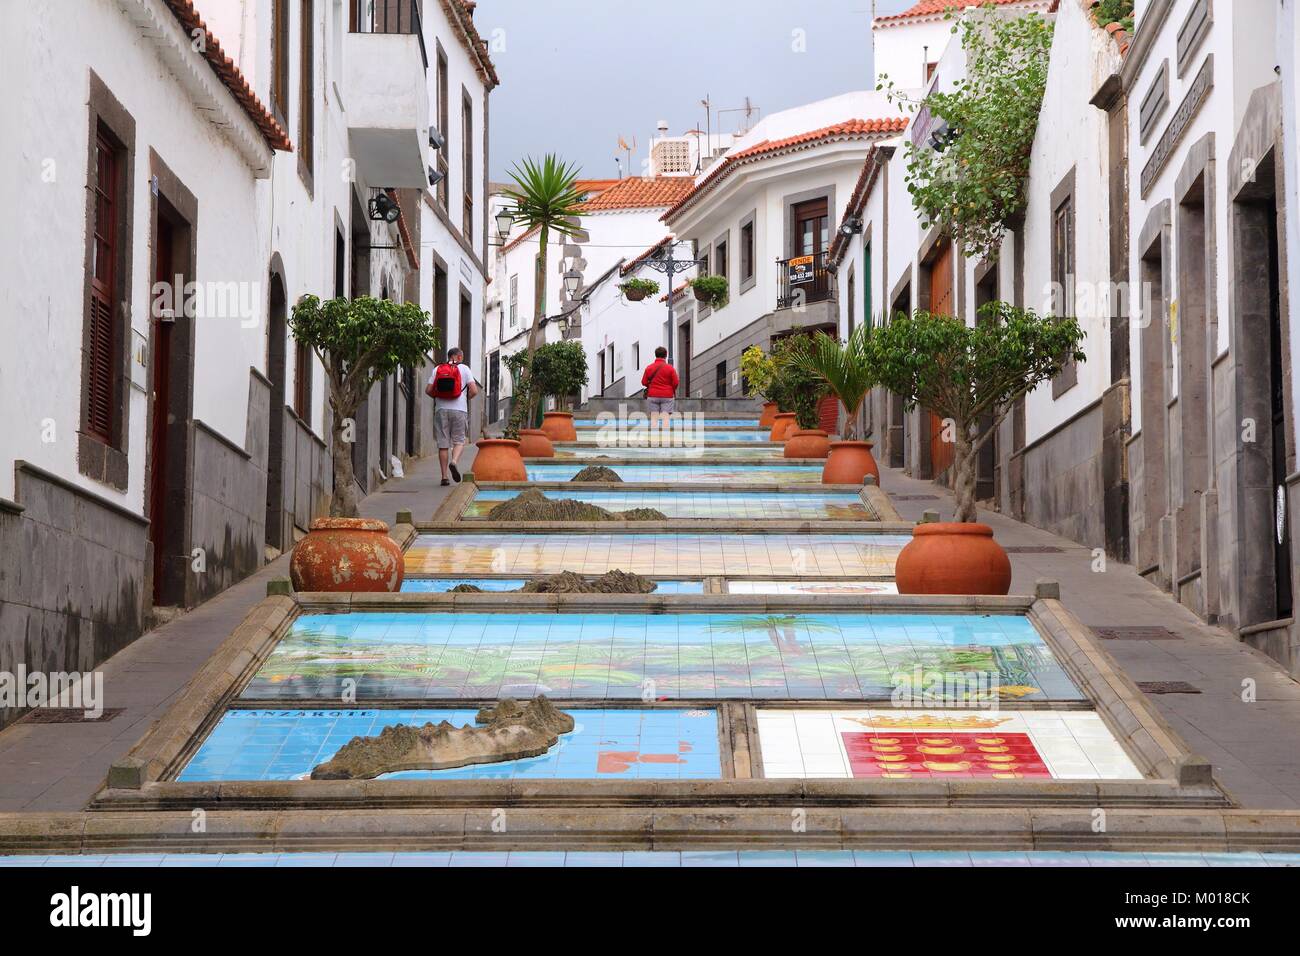 GRAN CANARIA, SPANIEN - November 29, 2015: die Menschen besuchen Firgas Altstadt in Gran Canaria, Spanien. Kanarischen Inseln hatte 12,9 Millionen Besucher in 2014. Stockfoto